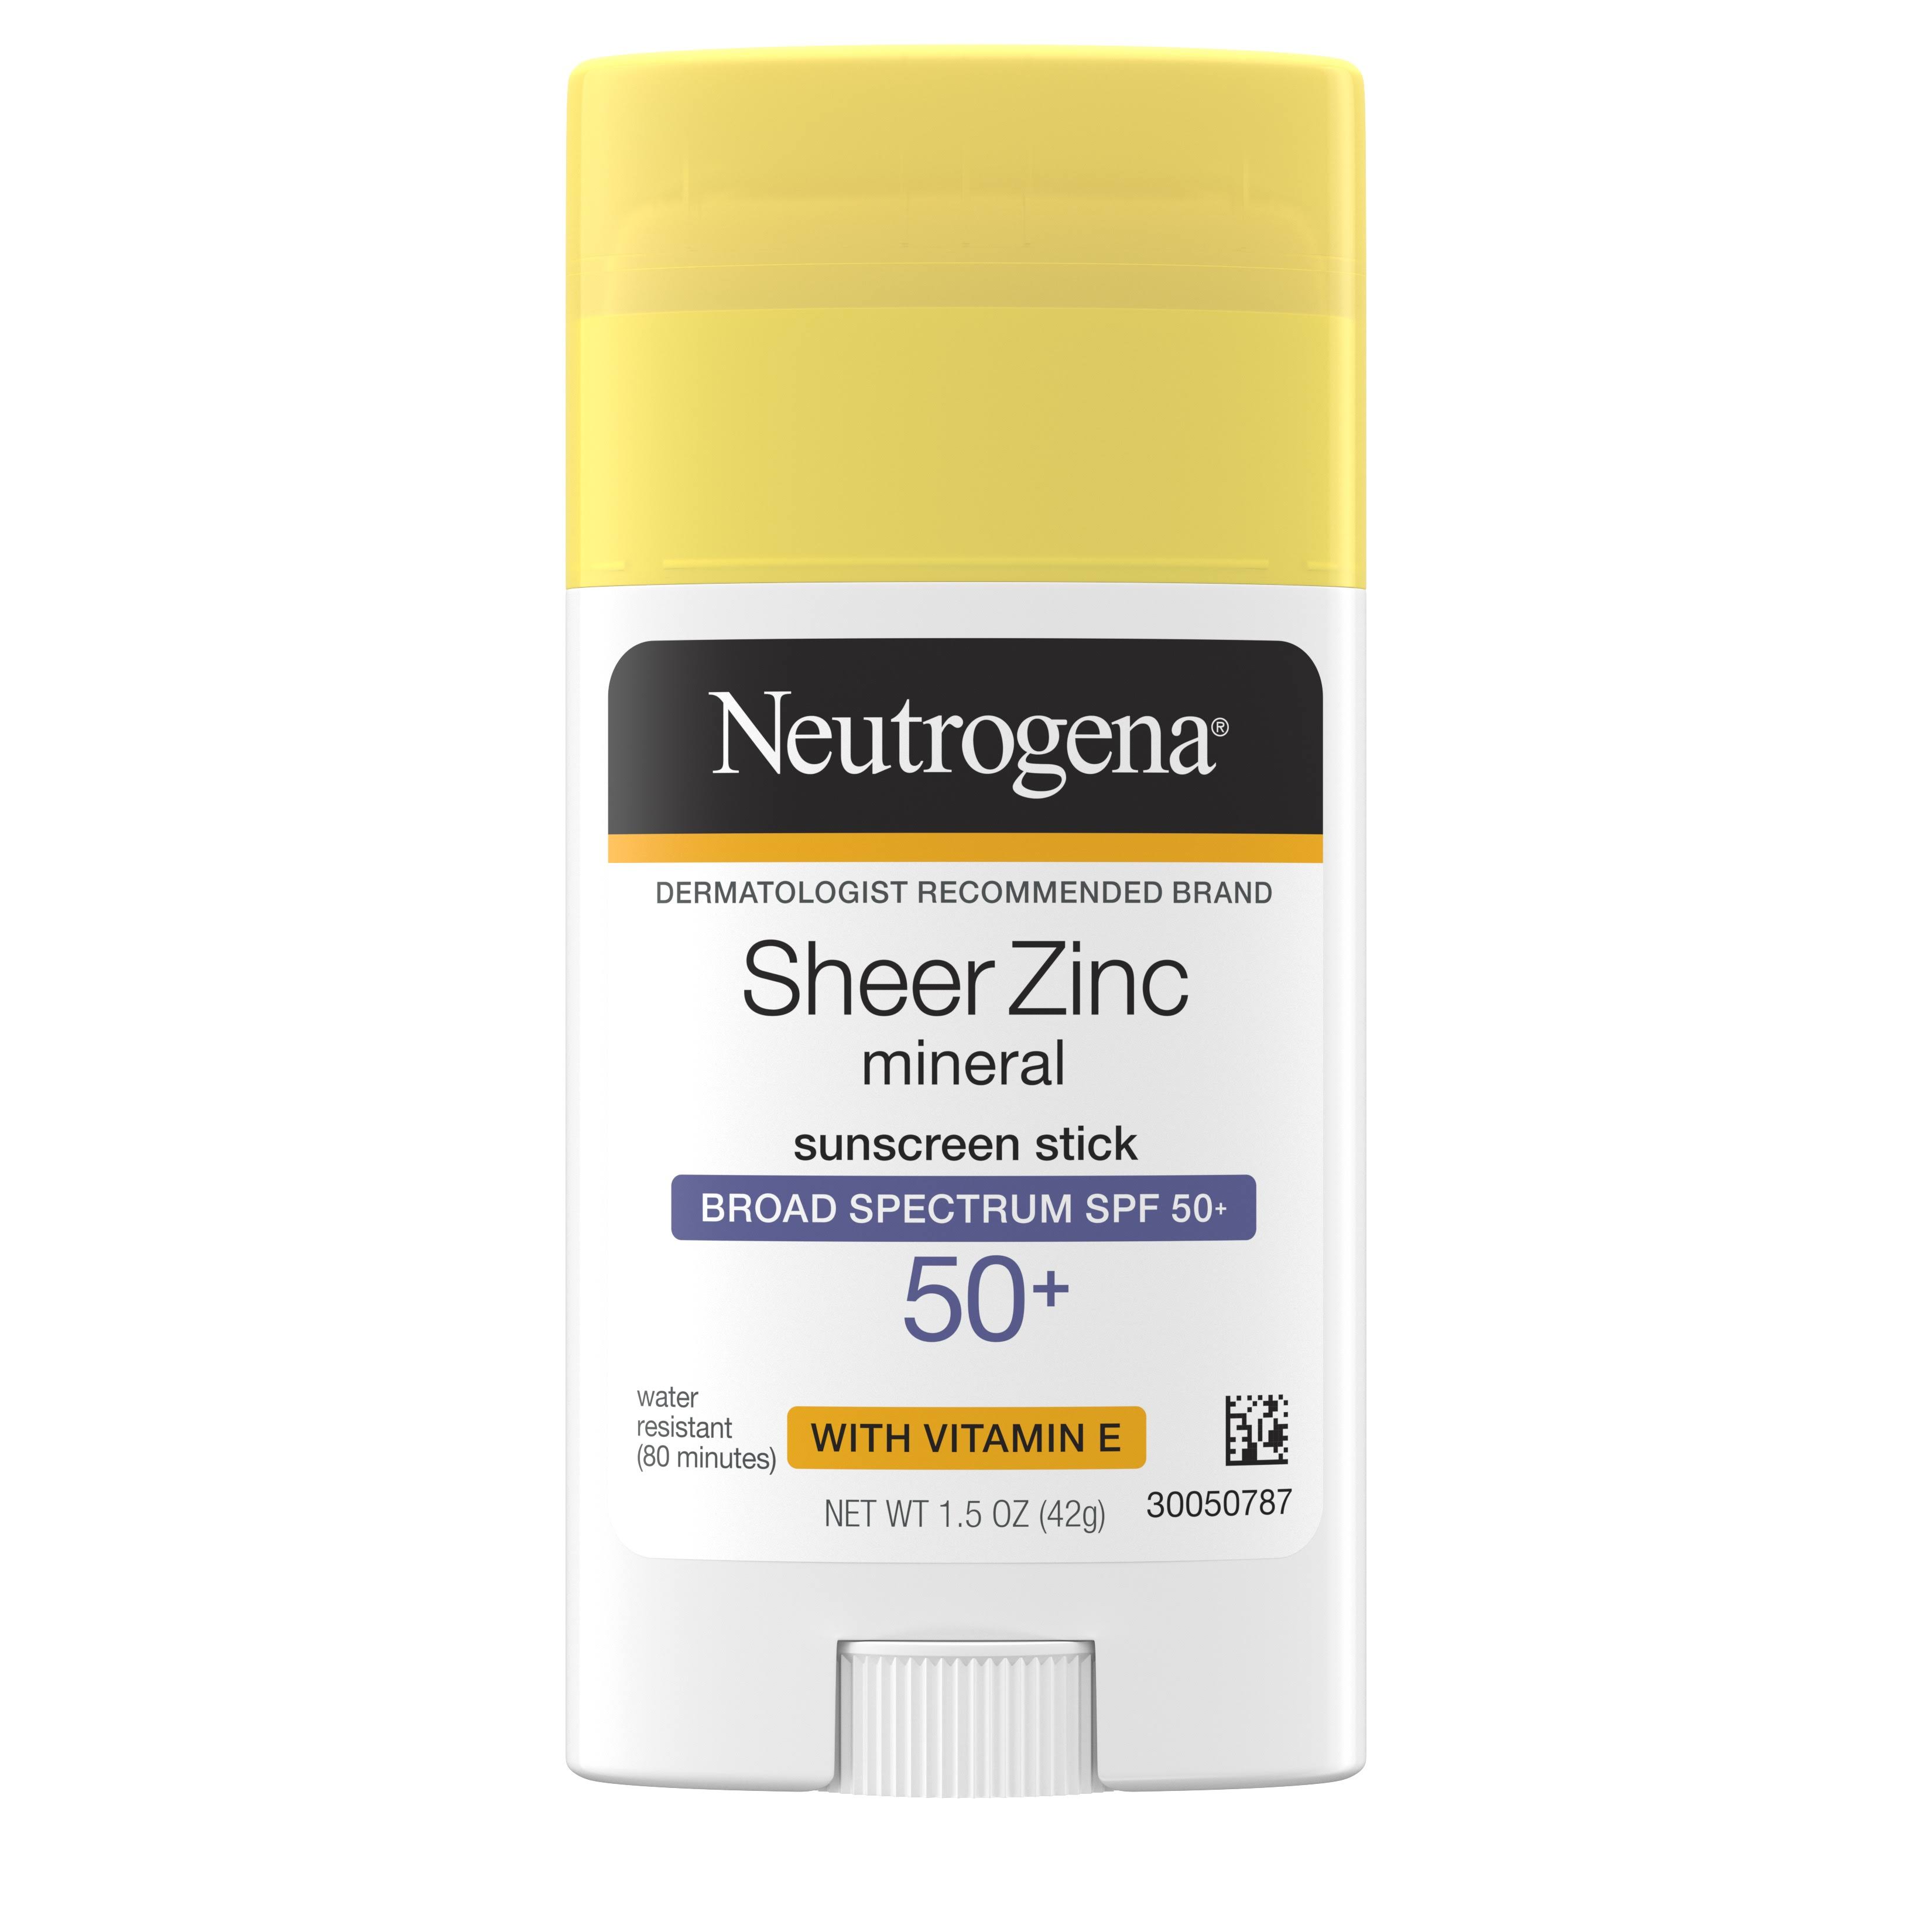 Neutrogena Sheer Zinc Sunscreen Stick, Mineral, SPF 50+ - 1.5 oz